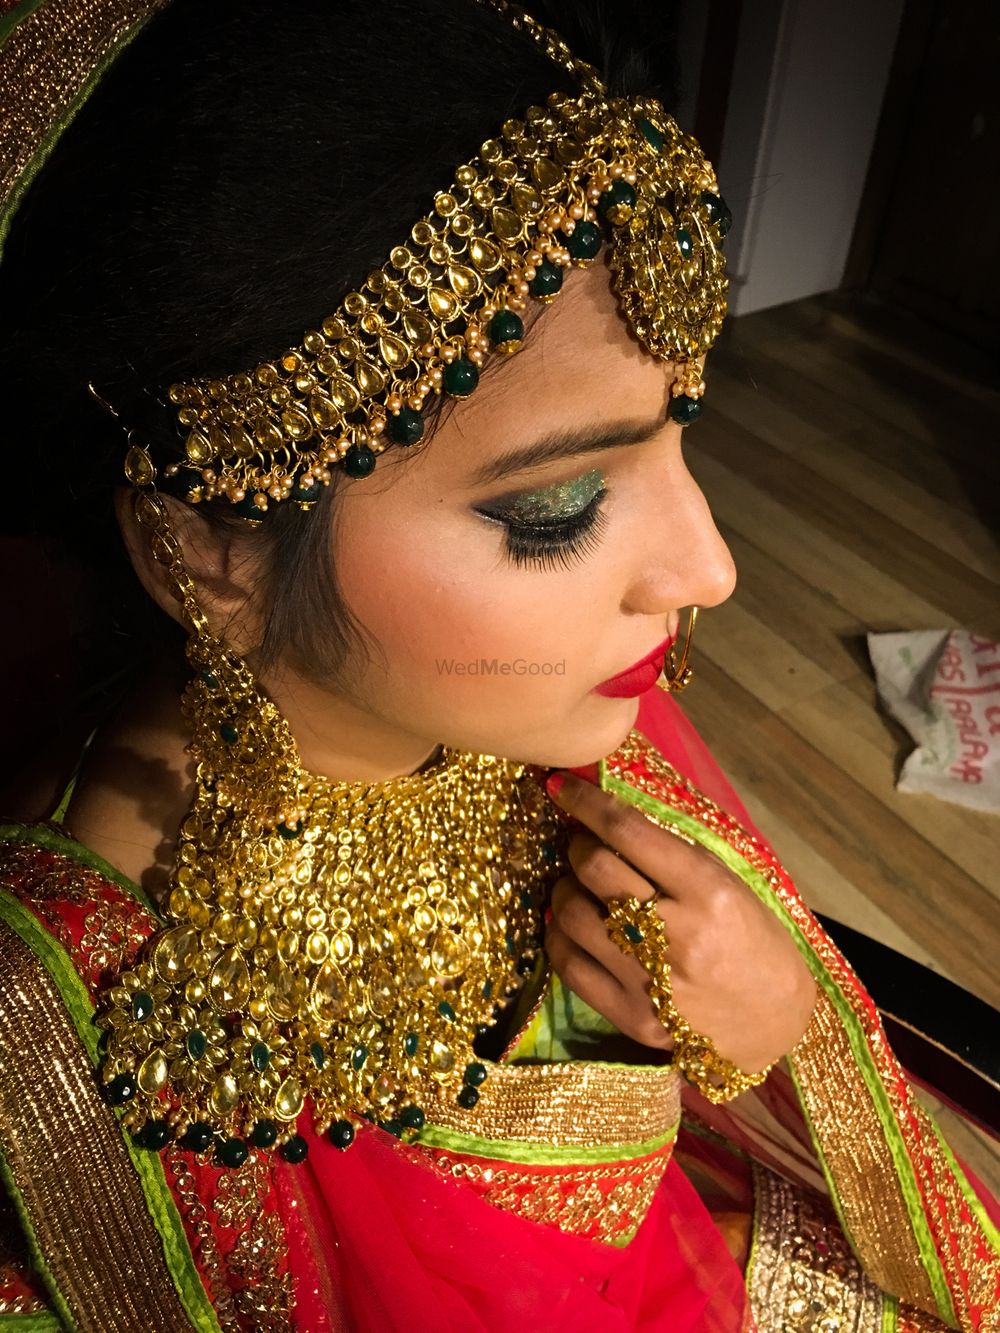 Photo By Tints and Shades - Bridal Makeup